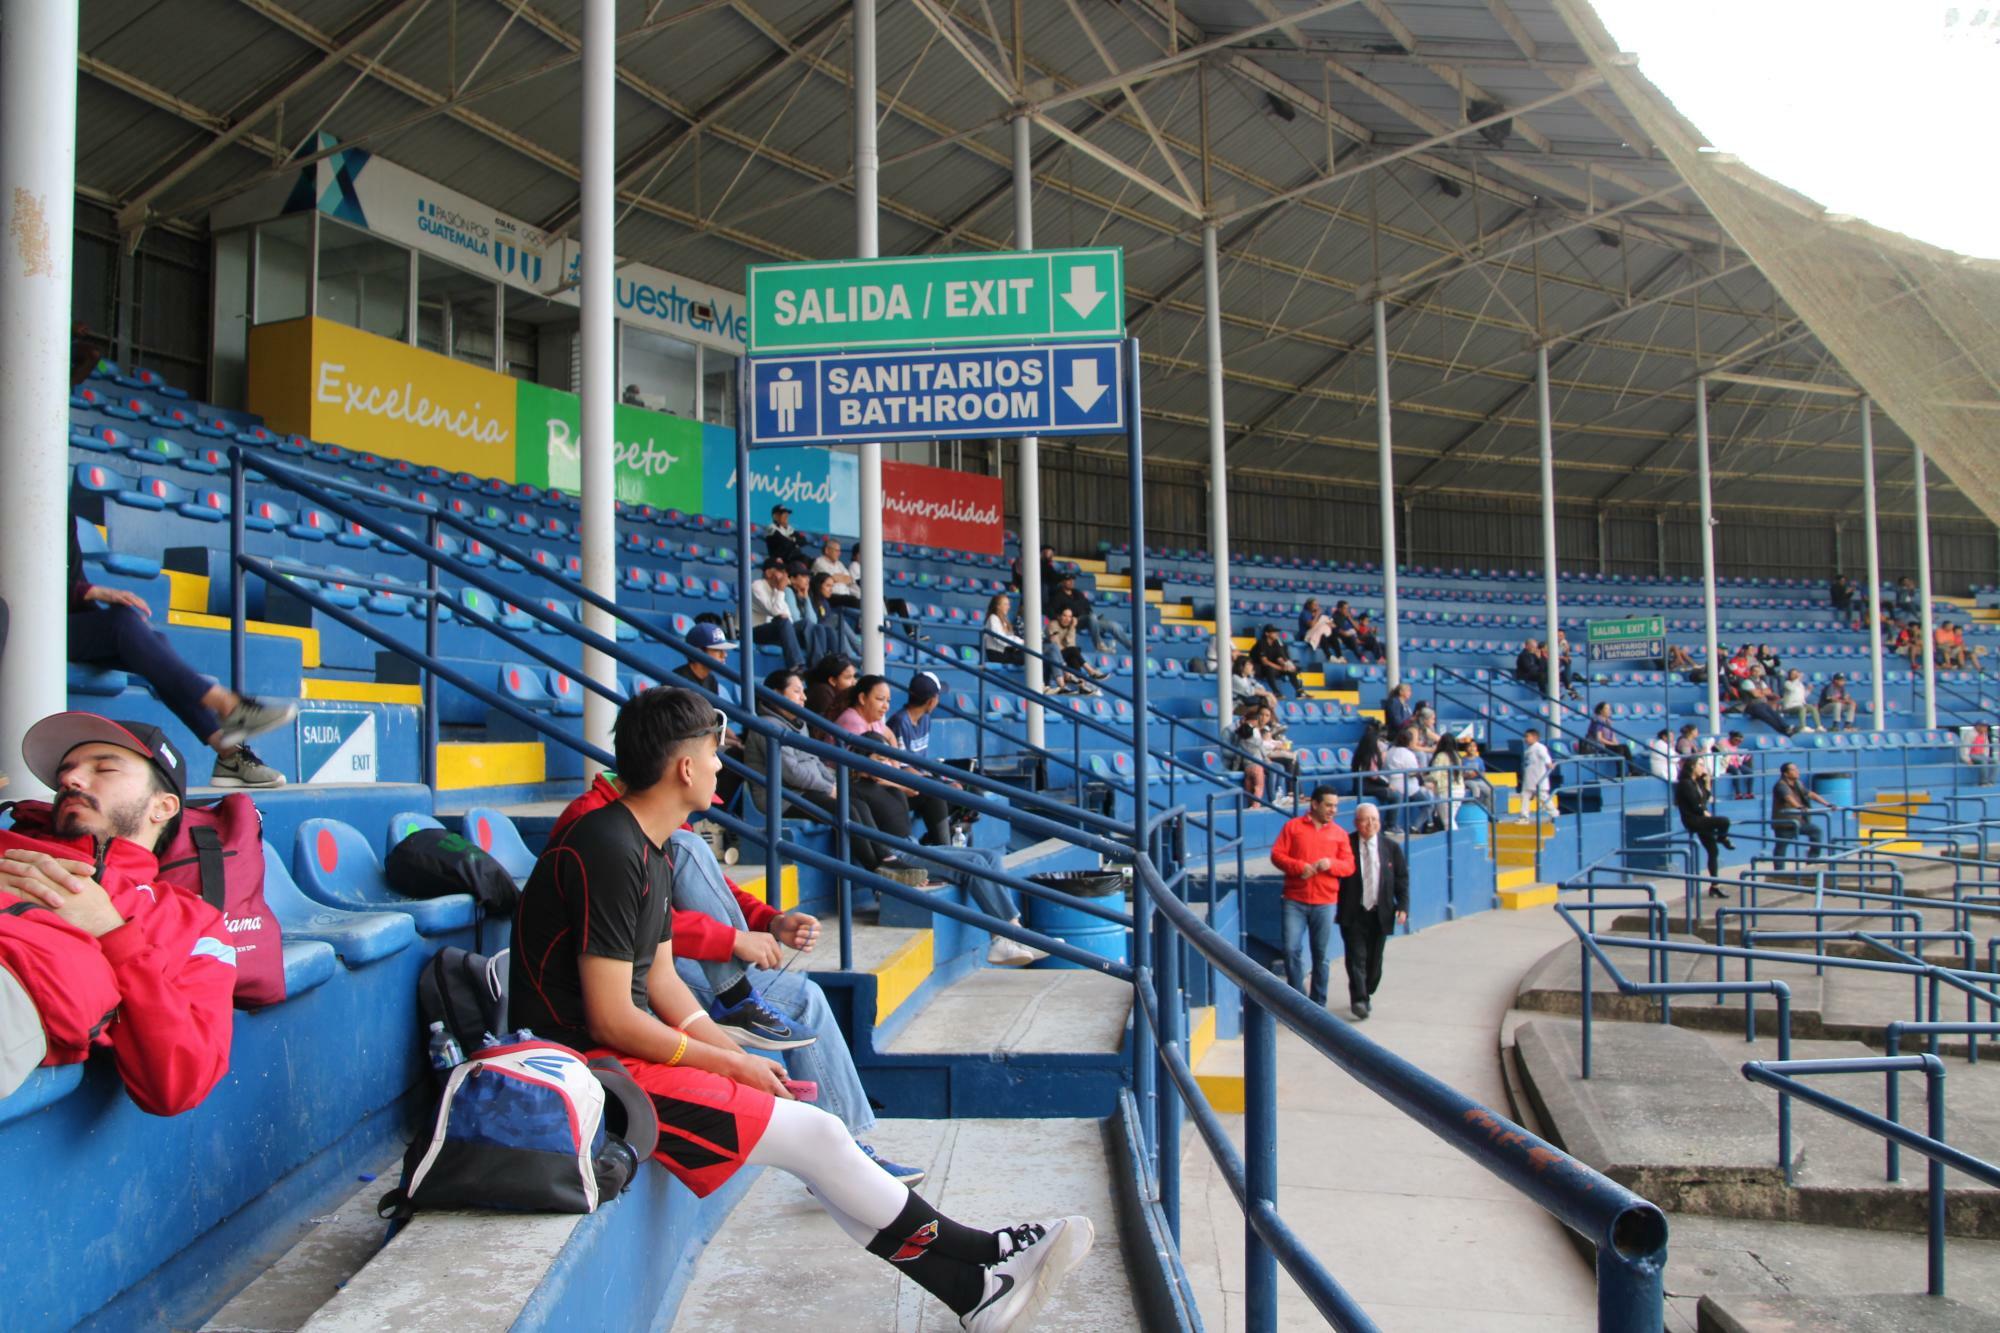 のんびりした雰囲気漂うグアテマラのスタジアム